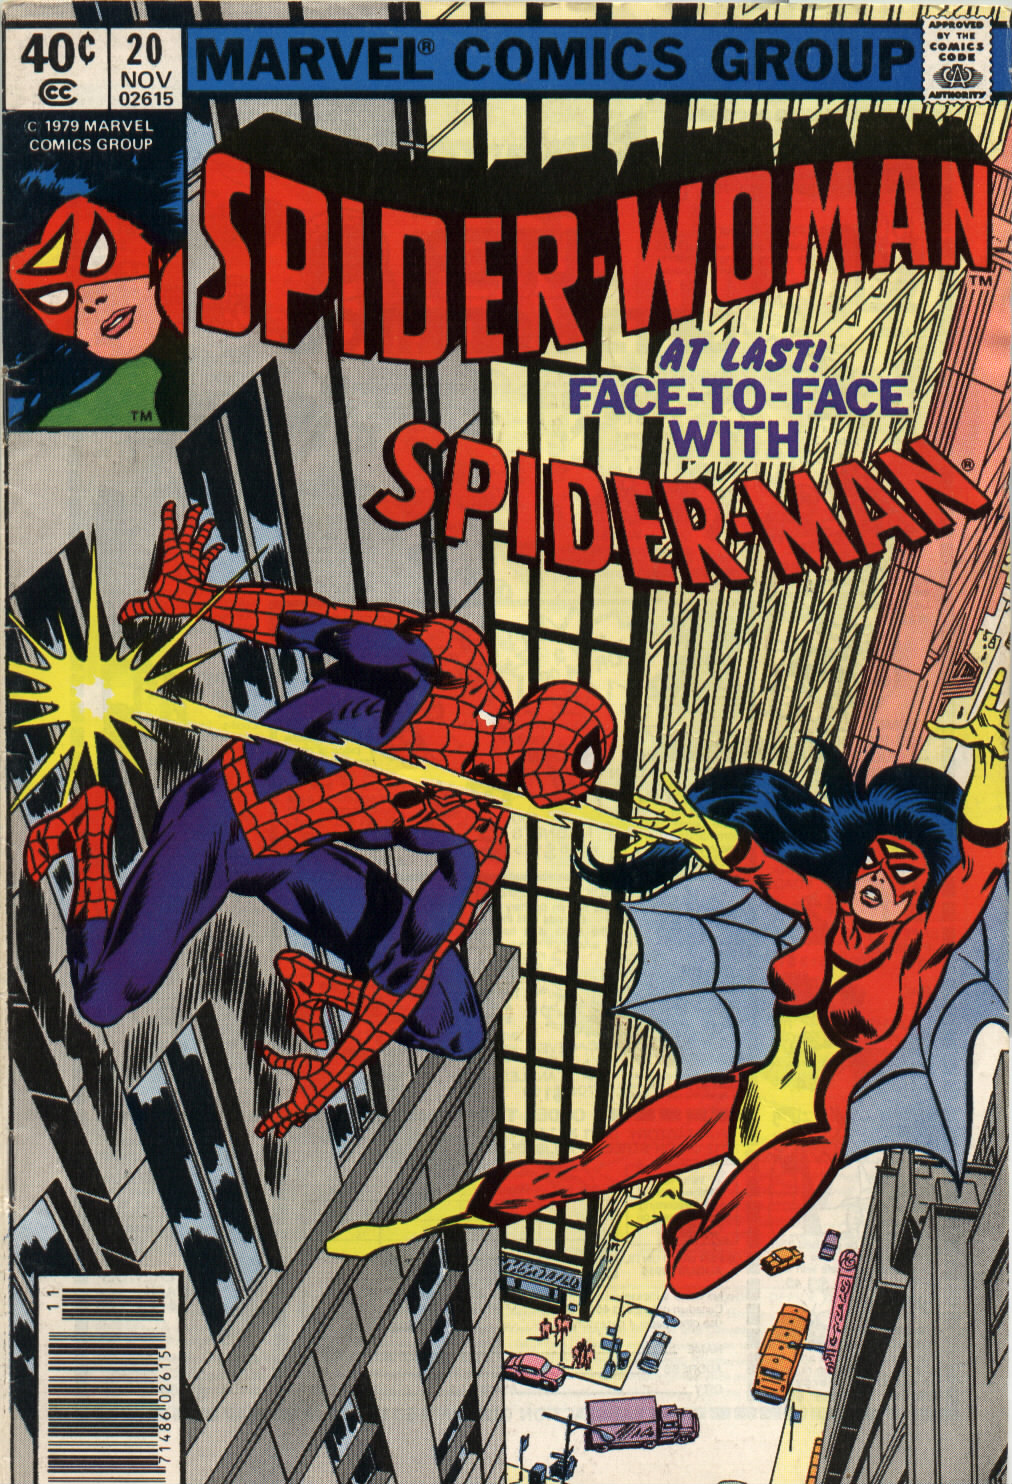 Portada del número 20 de Spider-Woman en la que vemos cómo por fin se ha producido el encuentro entre ella y Spider-Man.